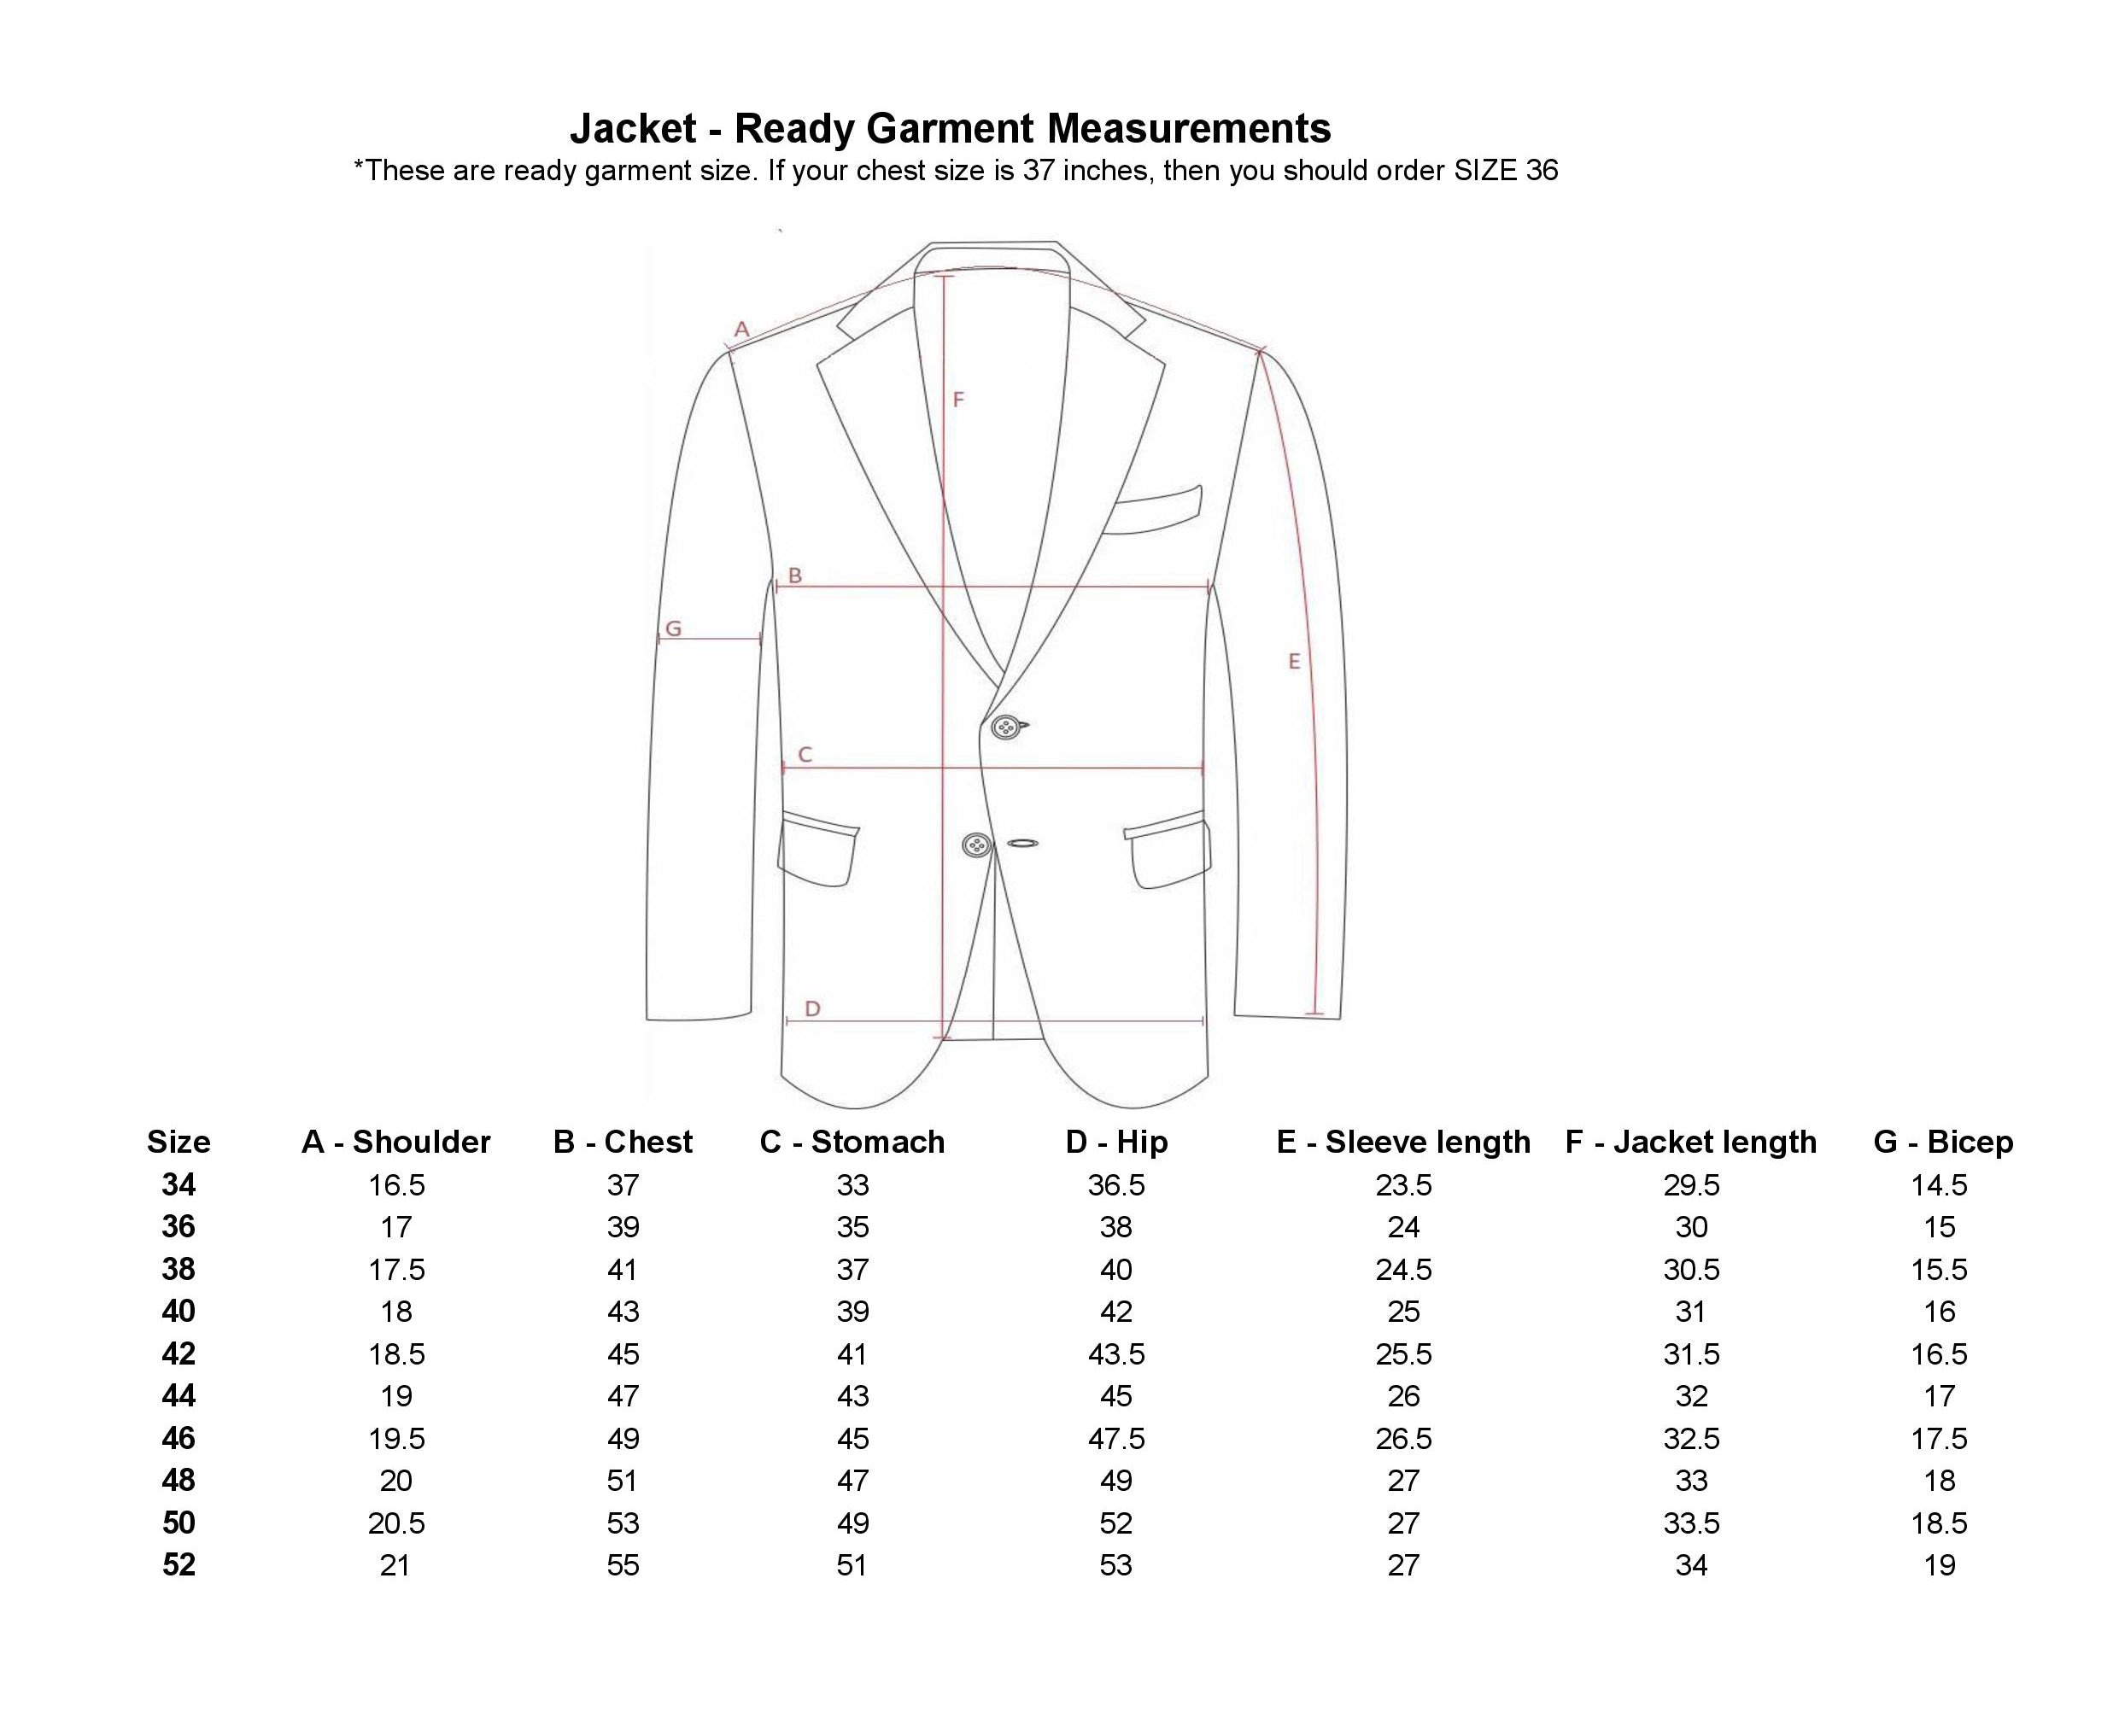 jacket size